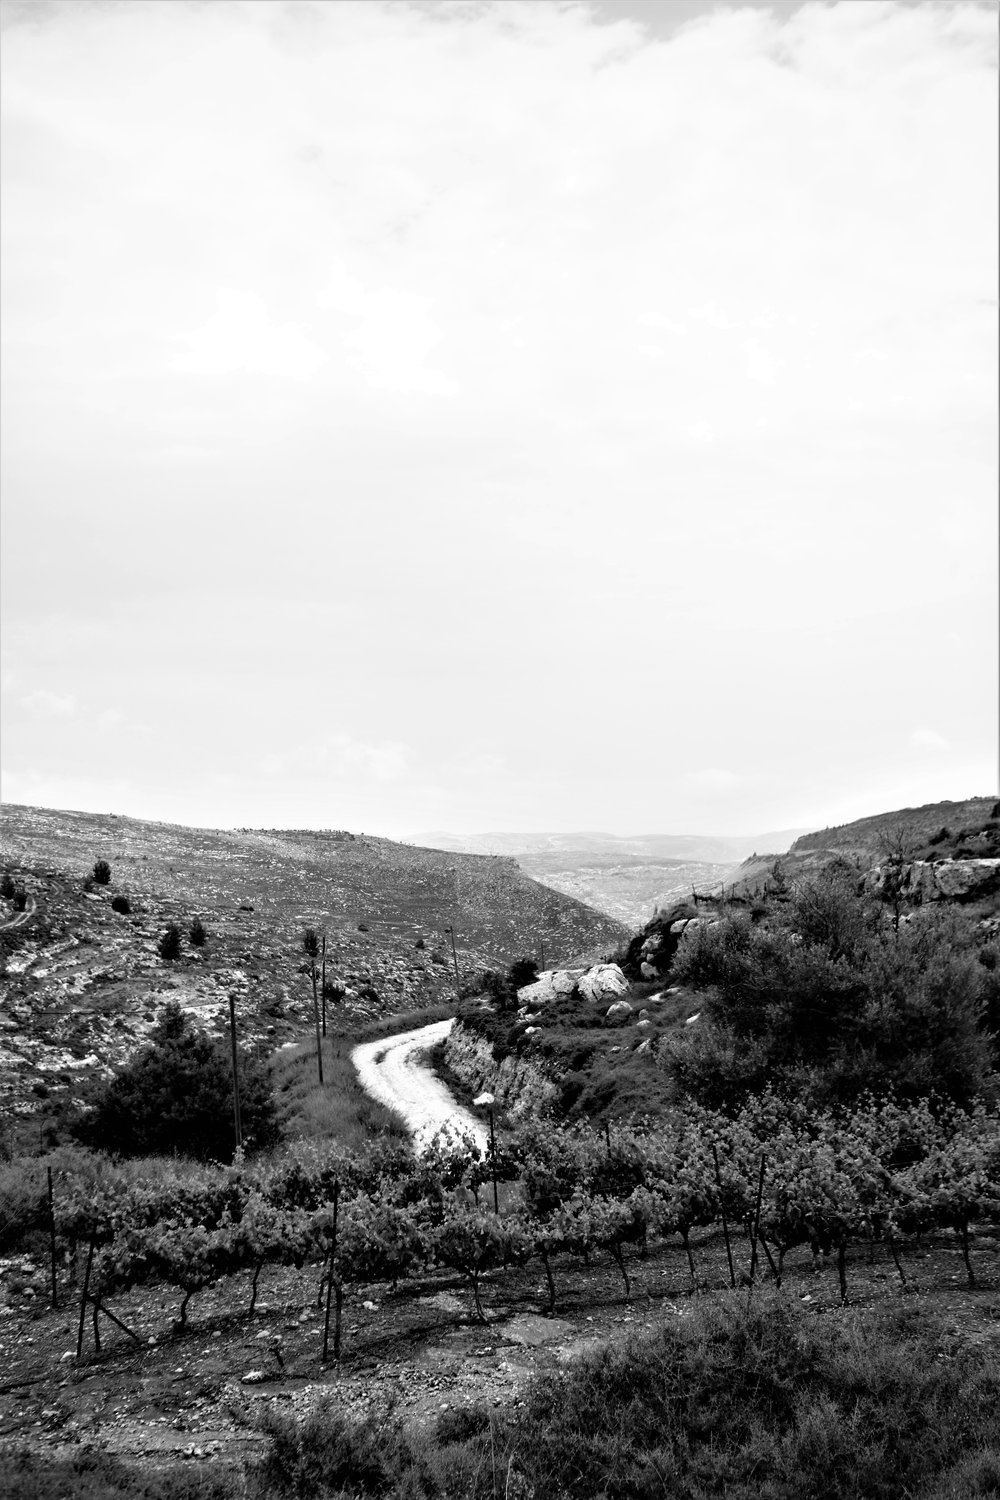  Reben der Psagot Winery am Rande der gleichnamigen Siedlung im Westjordanland. Die Landschaft ist hier noch biblisch –&nbsp;wüstenhaft, karg und unbebaut. 